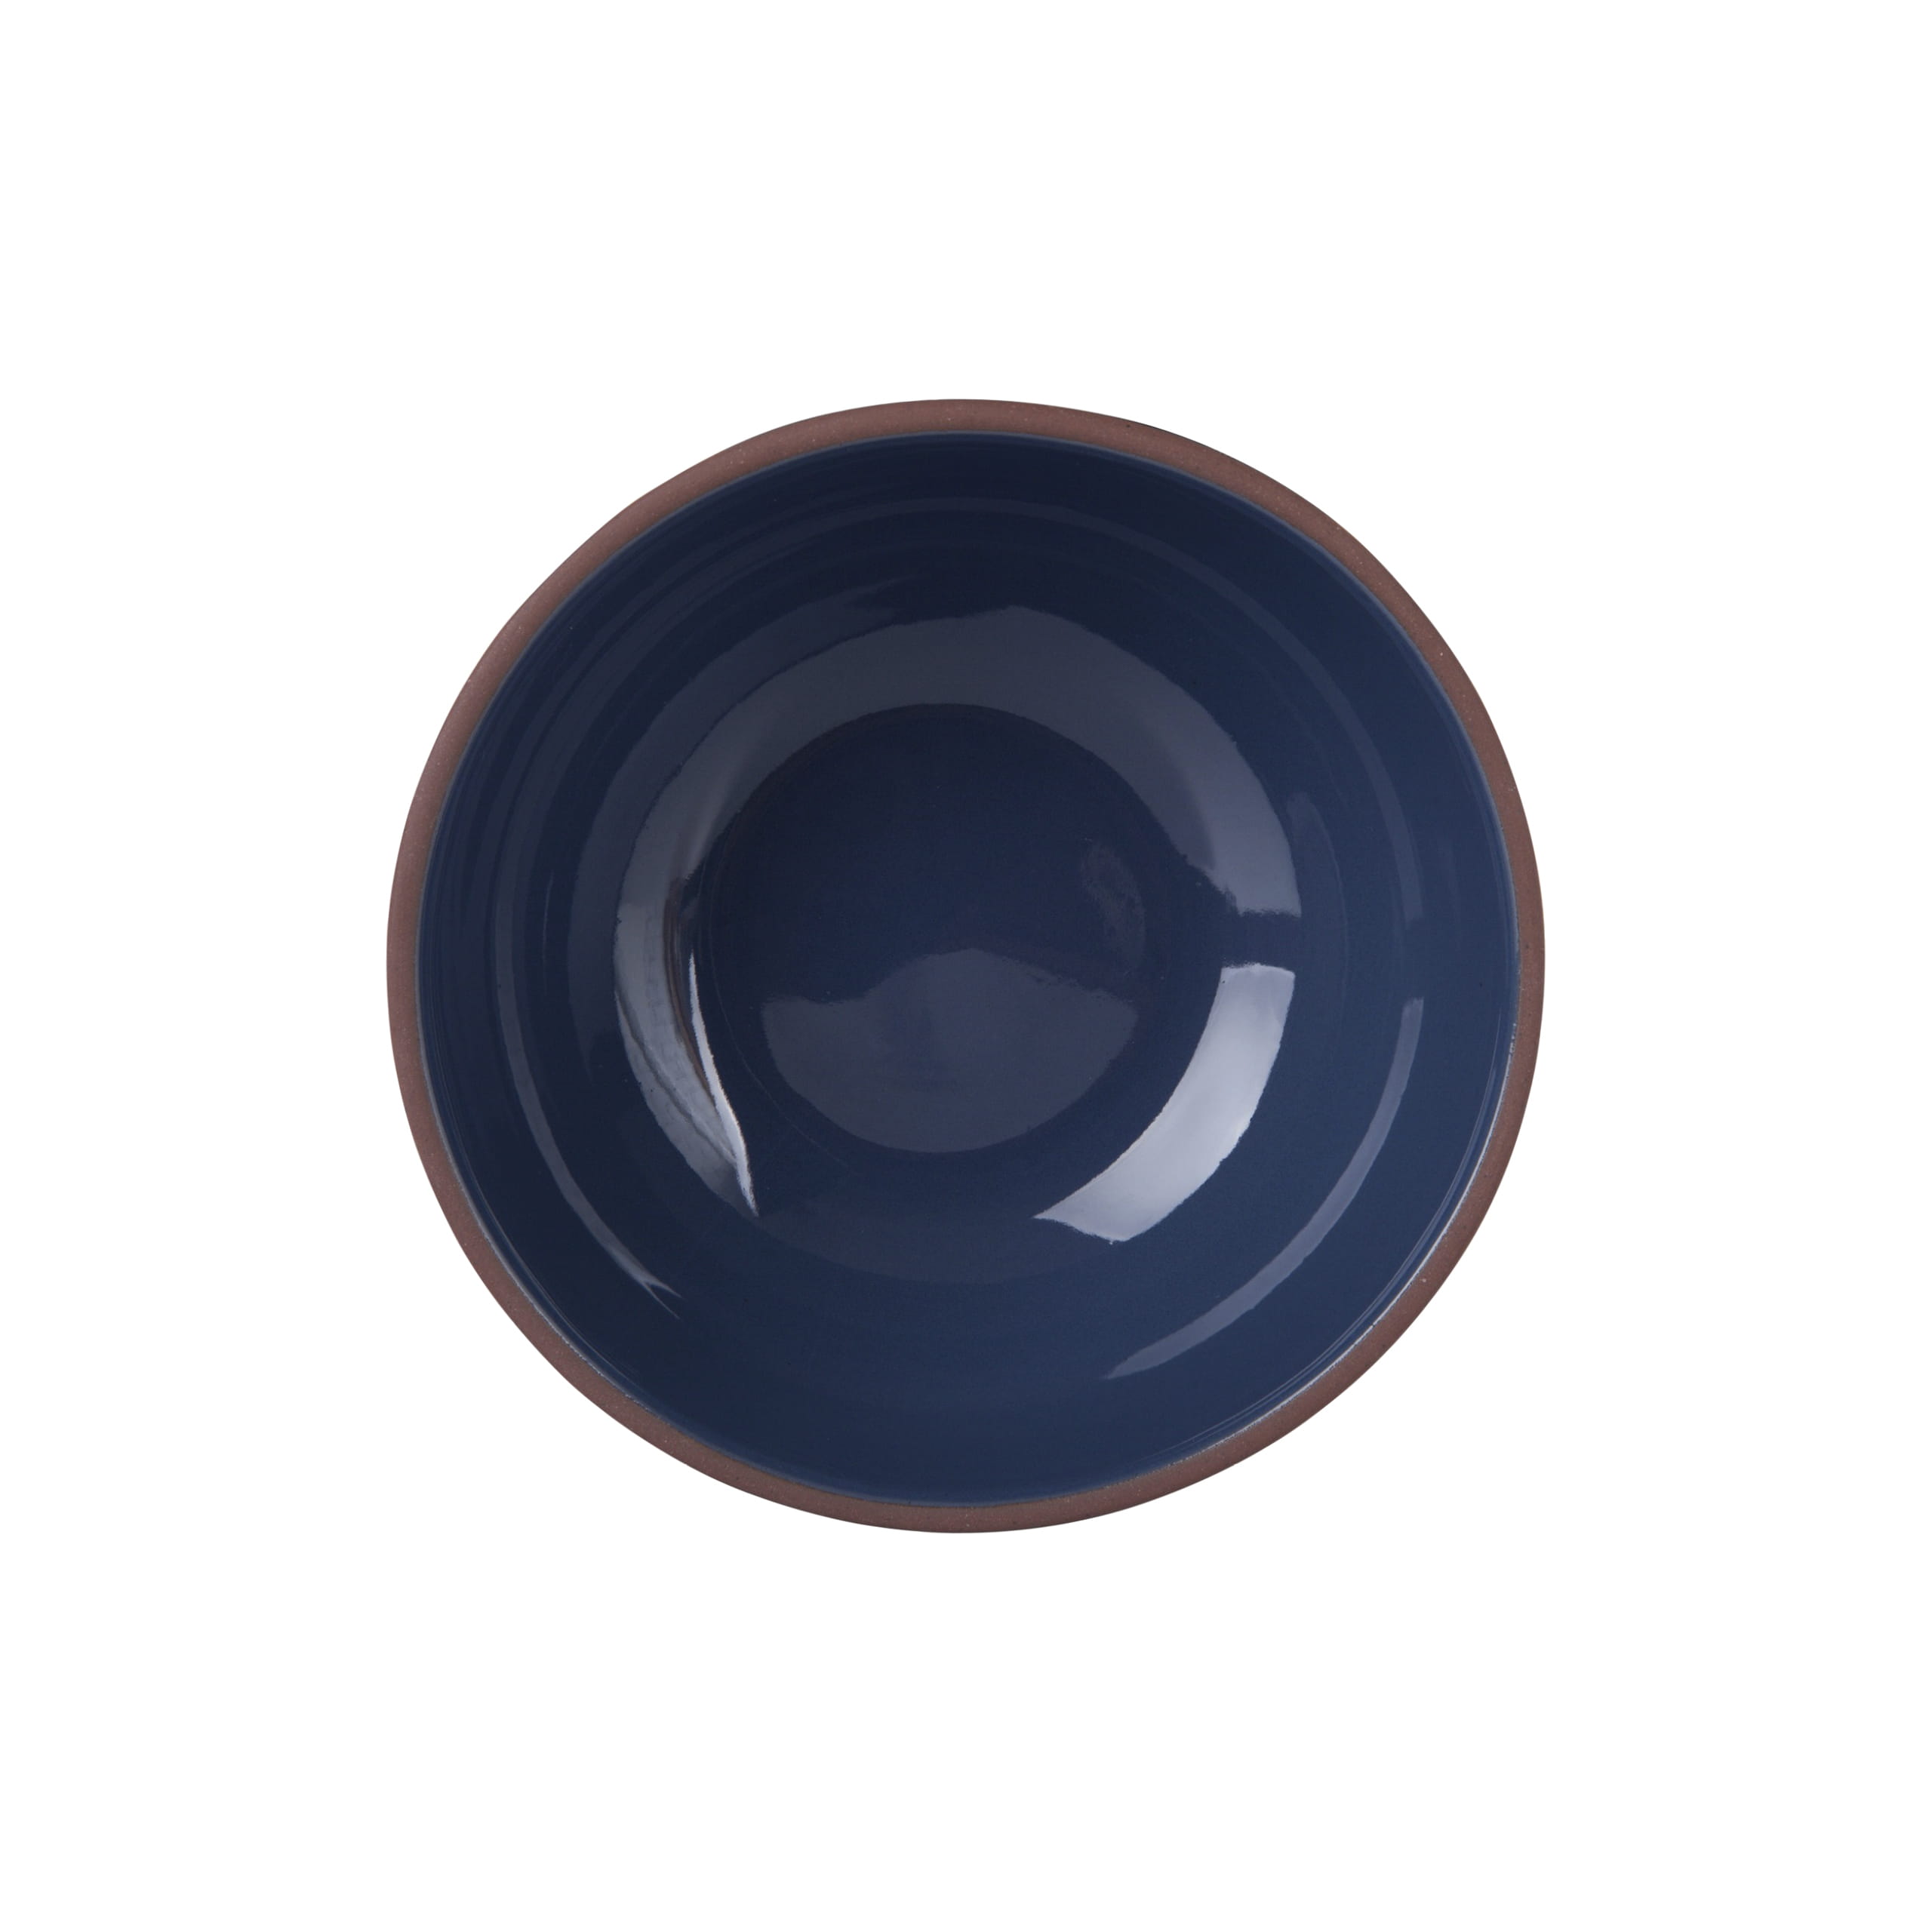 SIENNA Schale 12 x 5,5 cm, Blau, Keramik